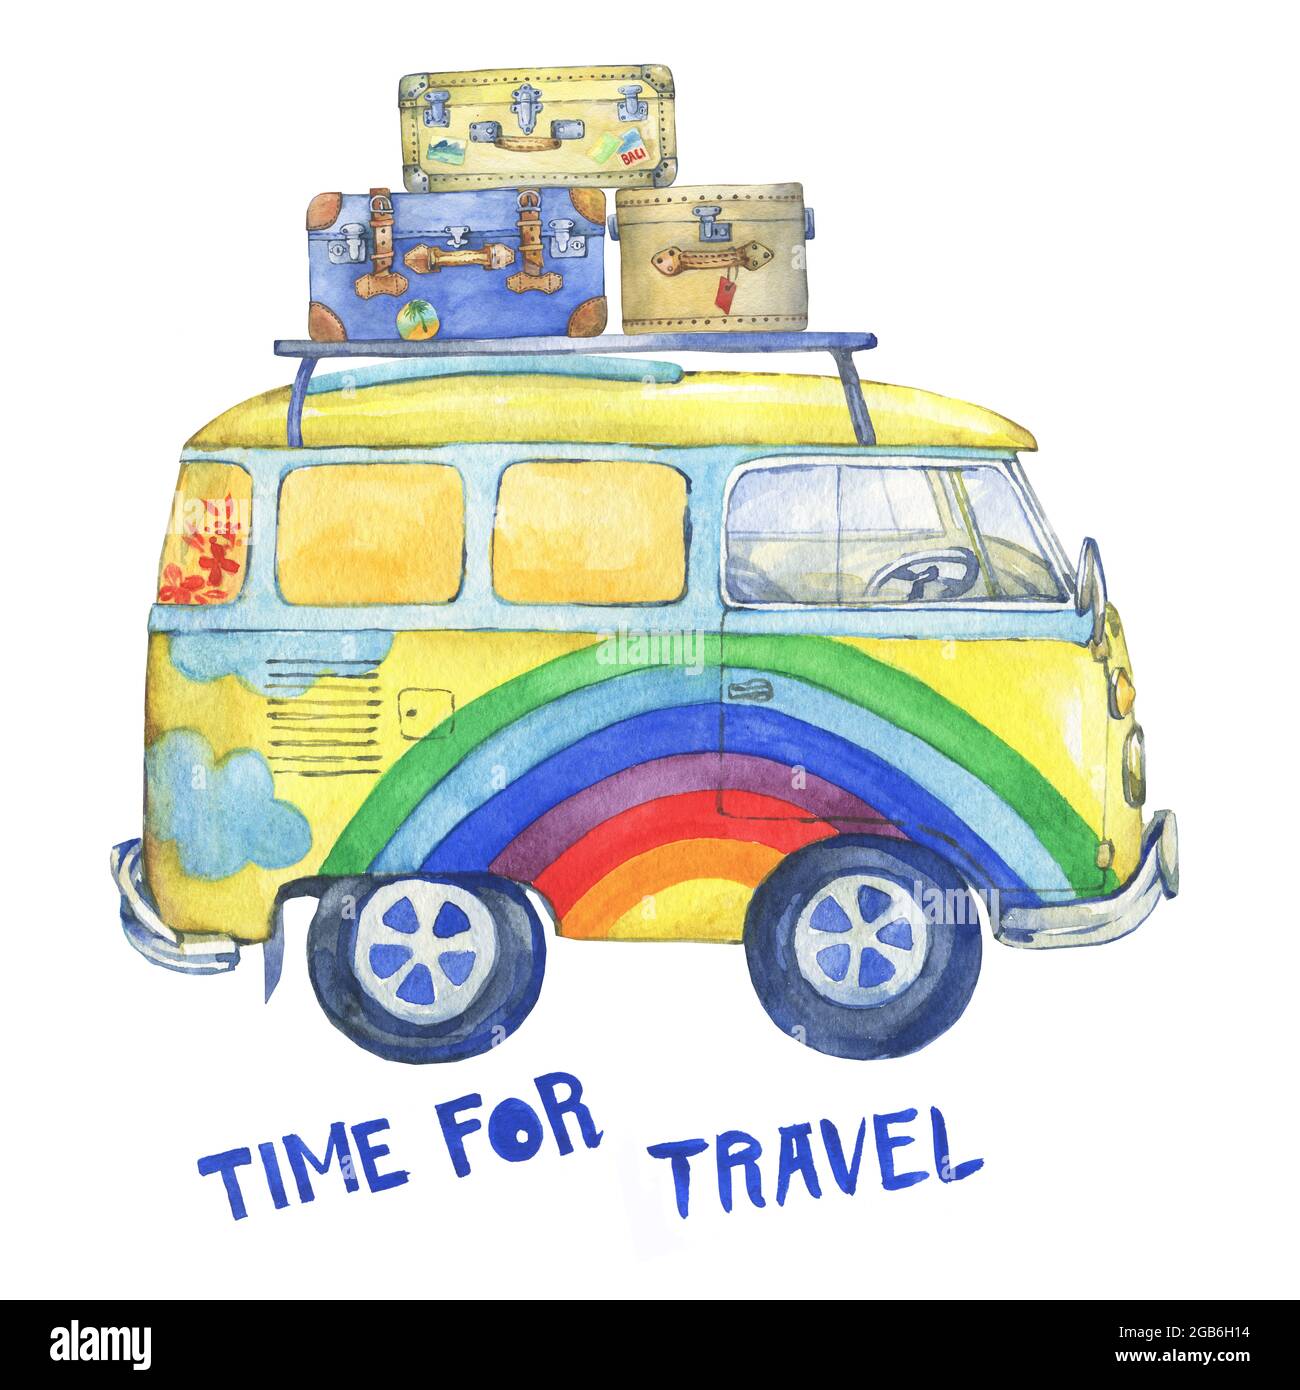 Hippie сamper autobus giallo vecchio stile con valigie, dipinto in colori arcobaleno. Illustrazione della pittura ad acquerello, isolata su sfondo bianco. Foto Stock